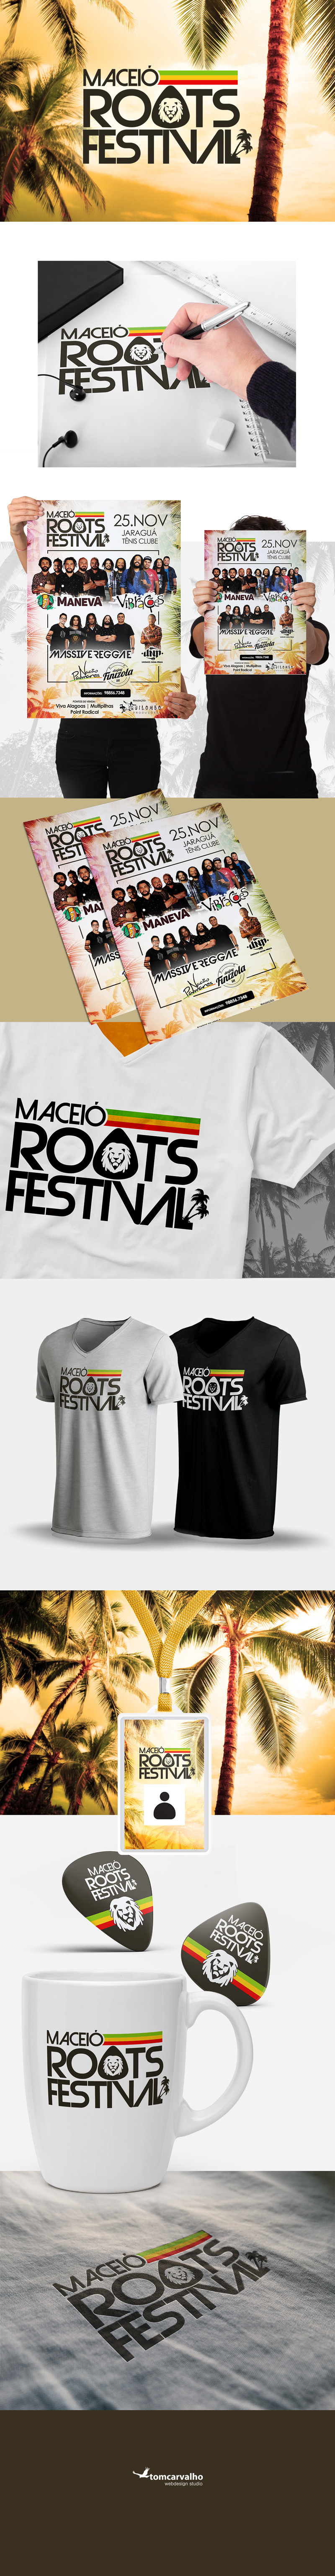 #Logo #Festival #brand #Branding #marca #reggae #reggaefestival #musica #music